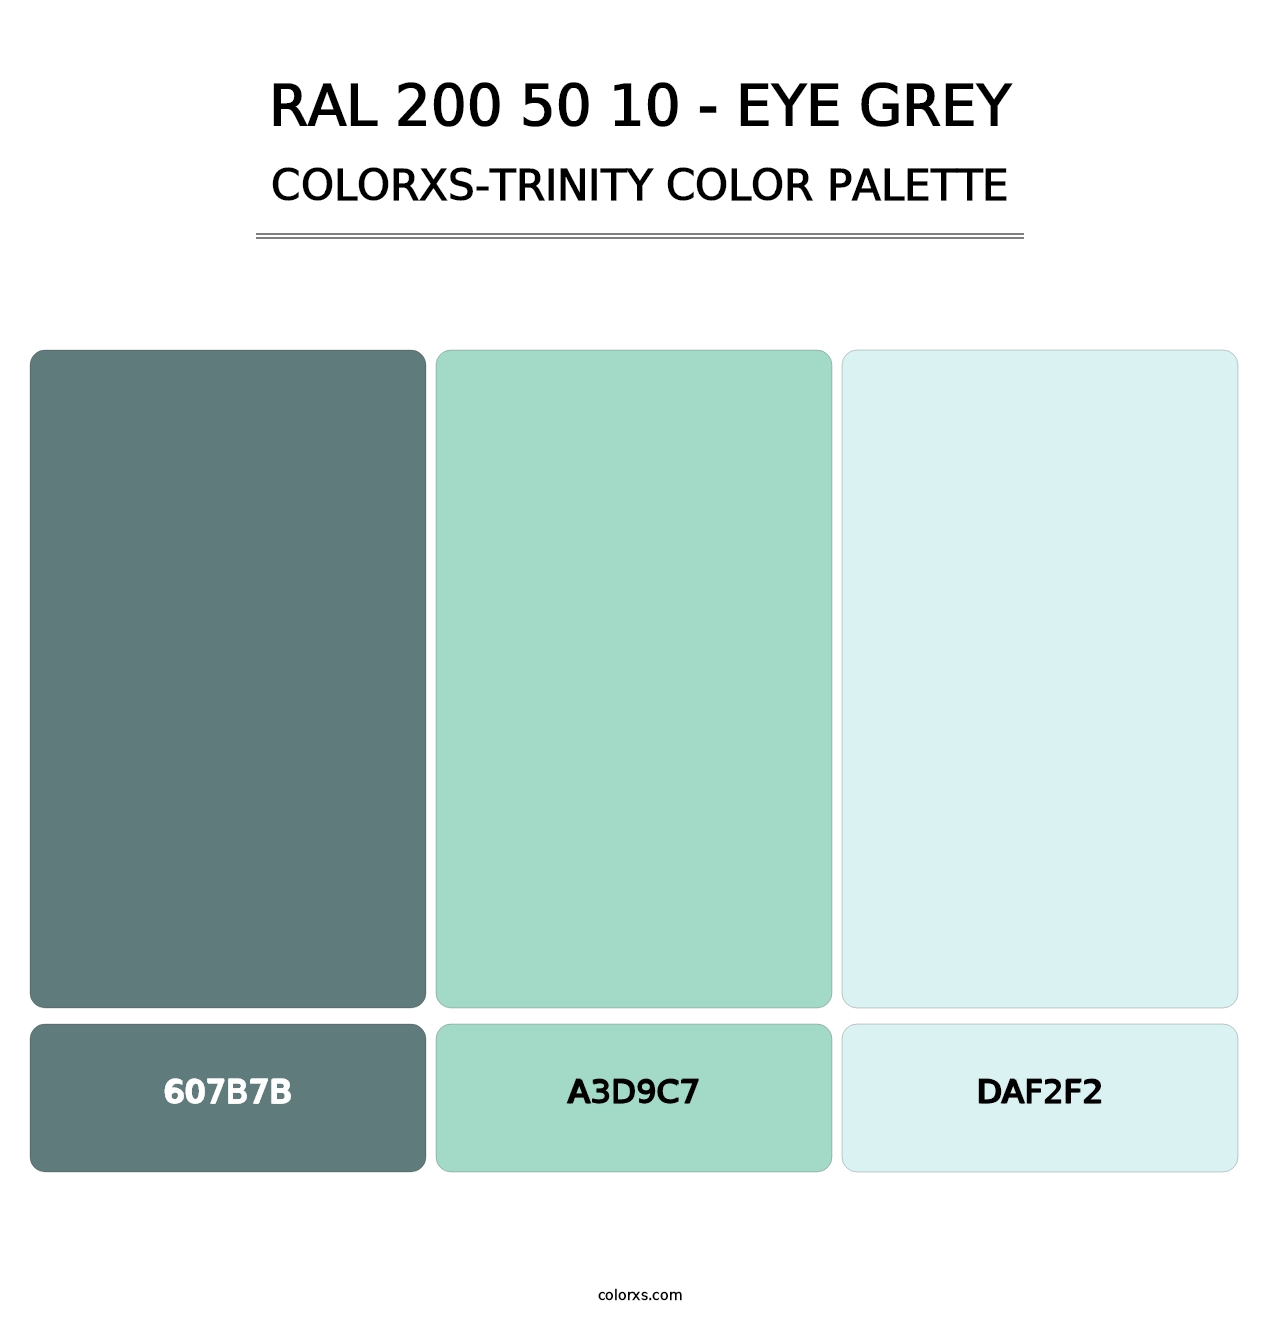 RAL 200 50 10 - Eye Grey - Colorxs Trinity Palette